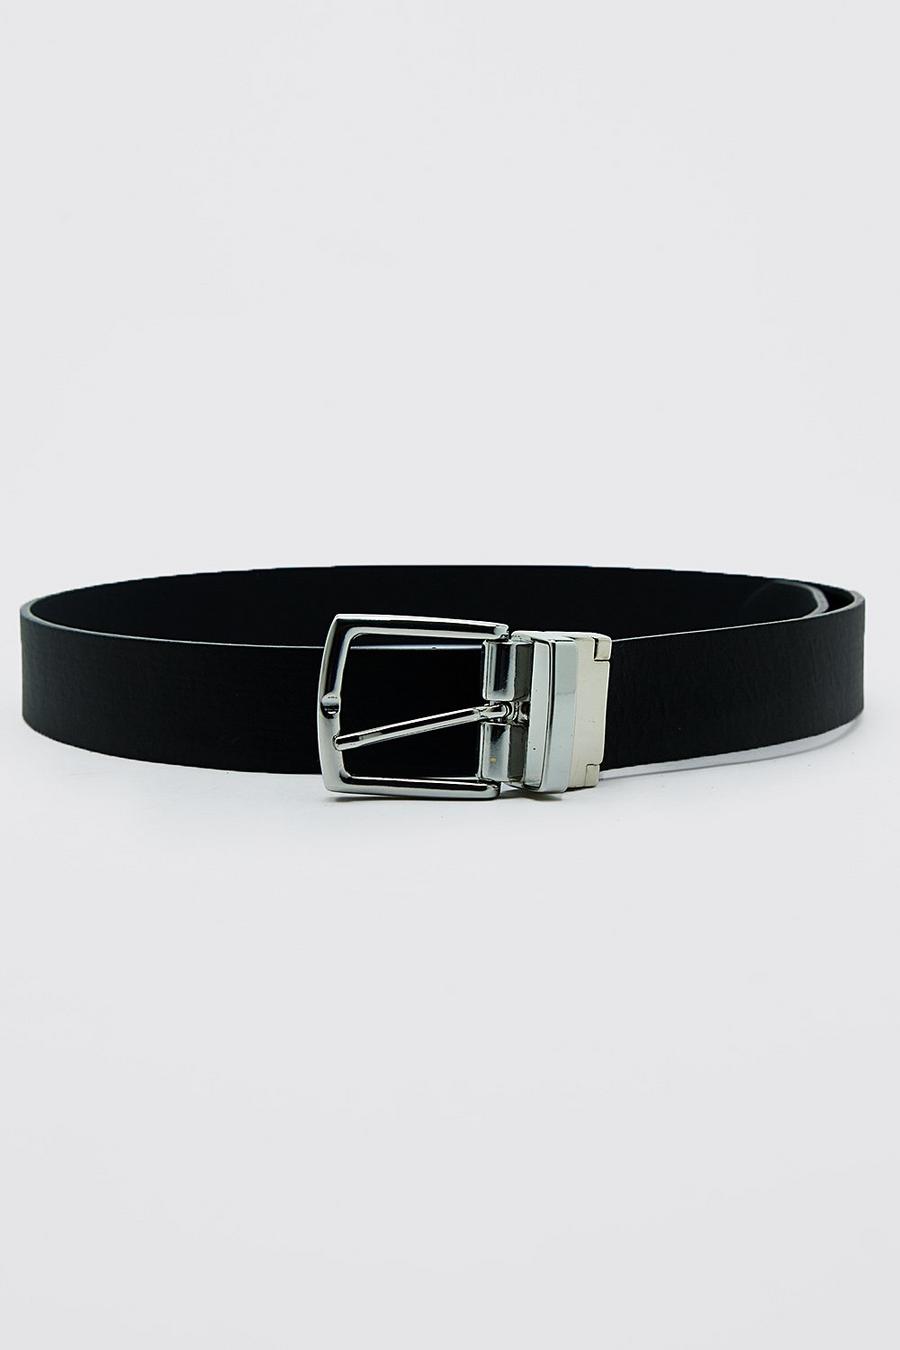 Cinturón reversible de cuero sintético texturizado, Black nero